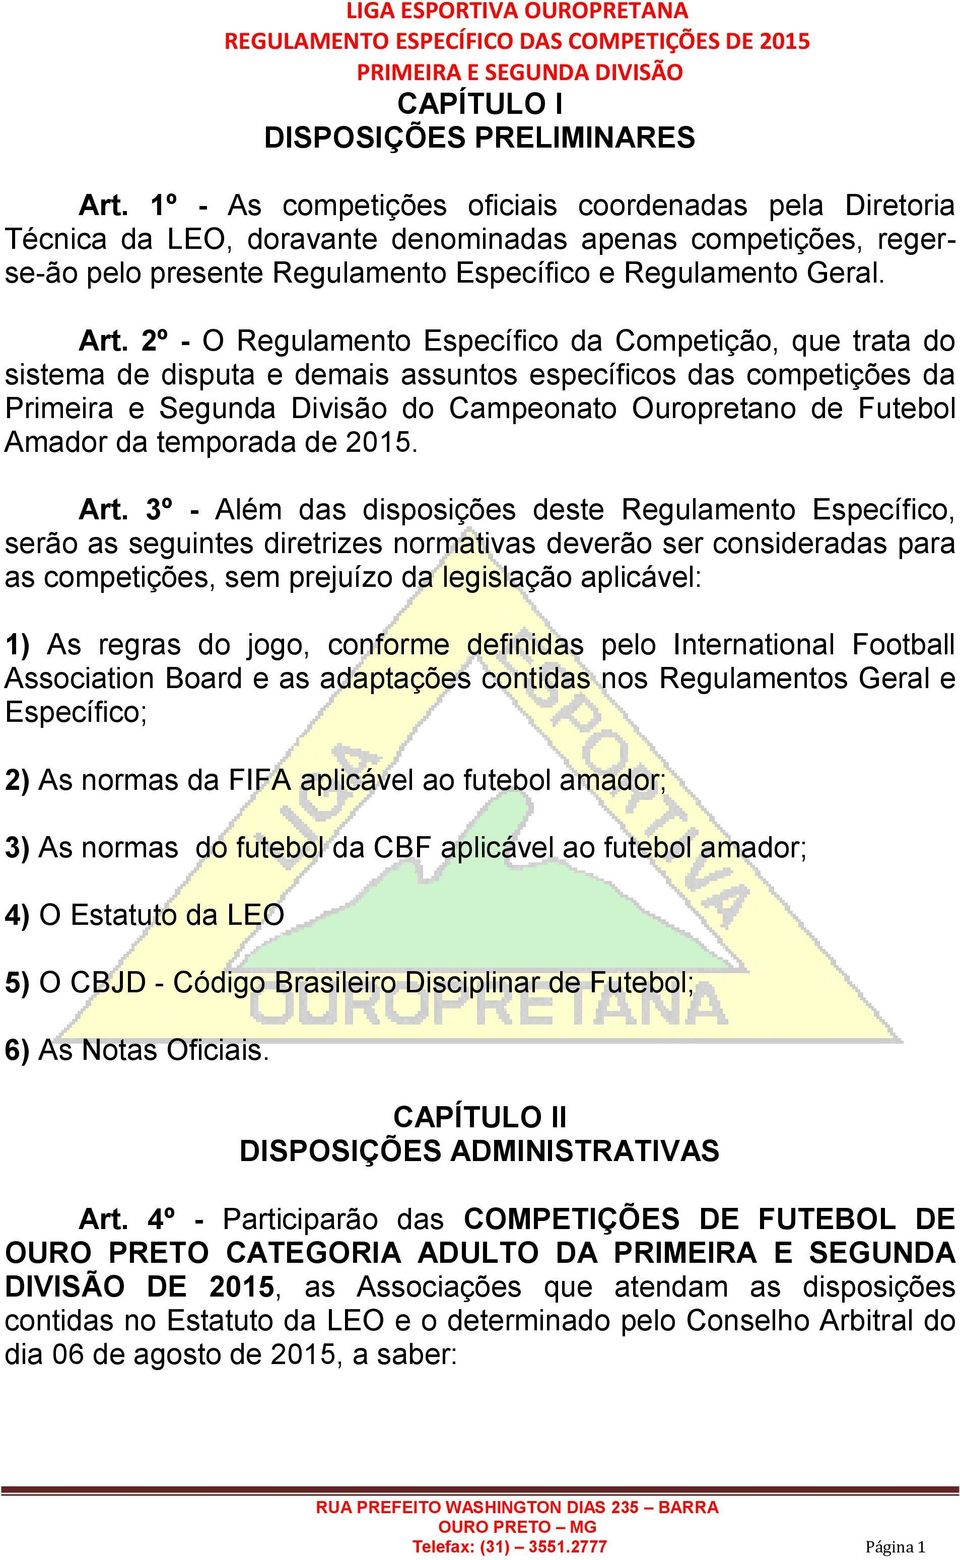 2º - O Regulamento Específico da Competição, que trata do sistema de disputa e demais assuntos específicos das competições da Primeira e Segunda Divisão do Campeonato Ouropretano de Futebol Amador da